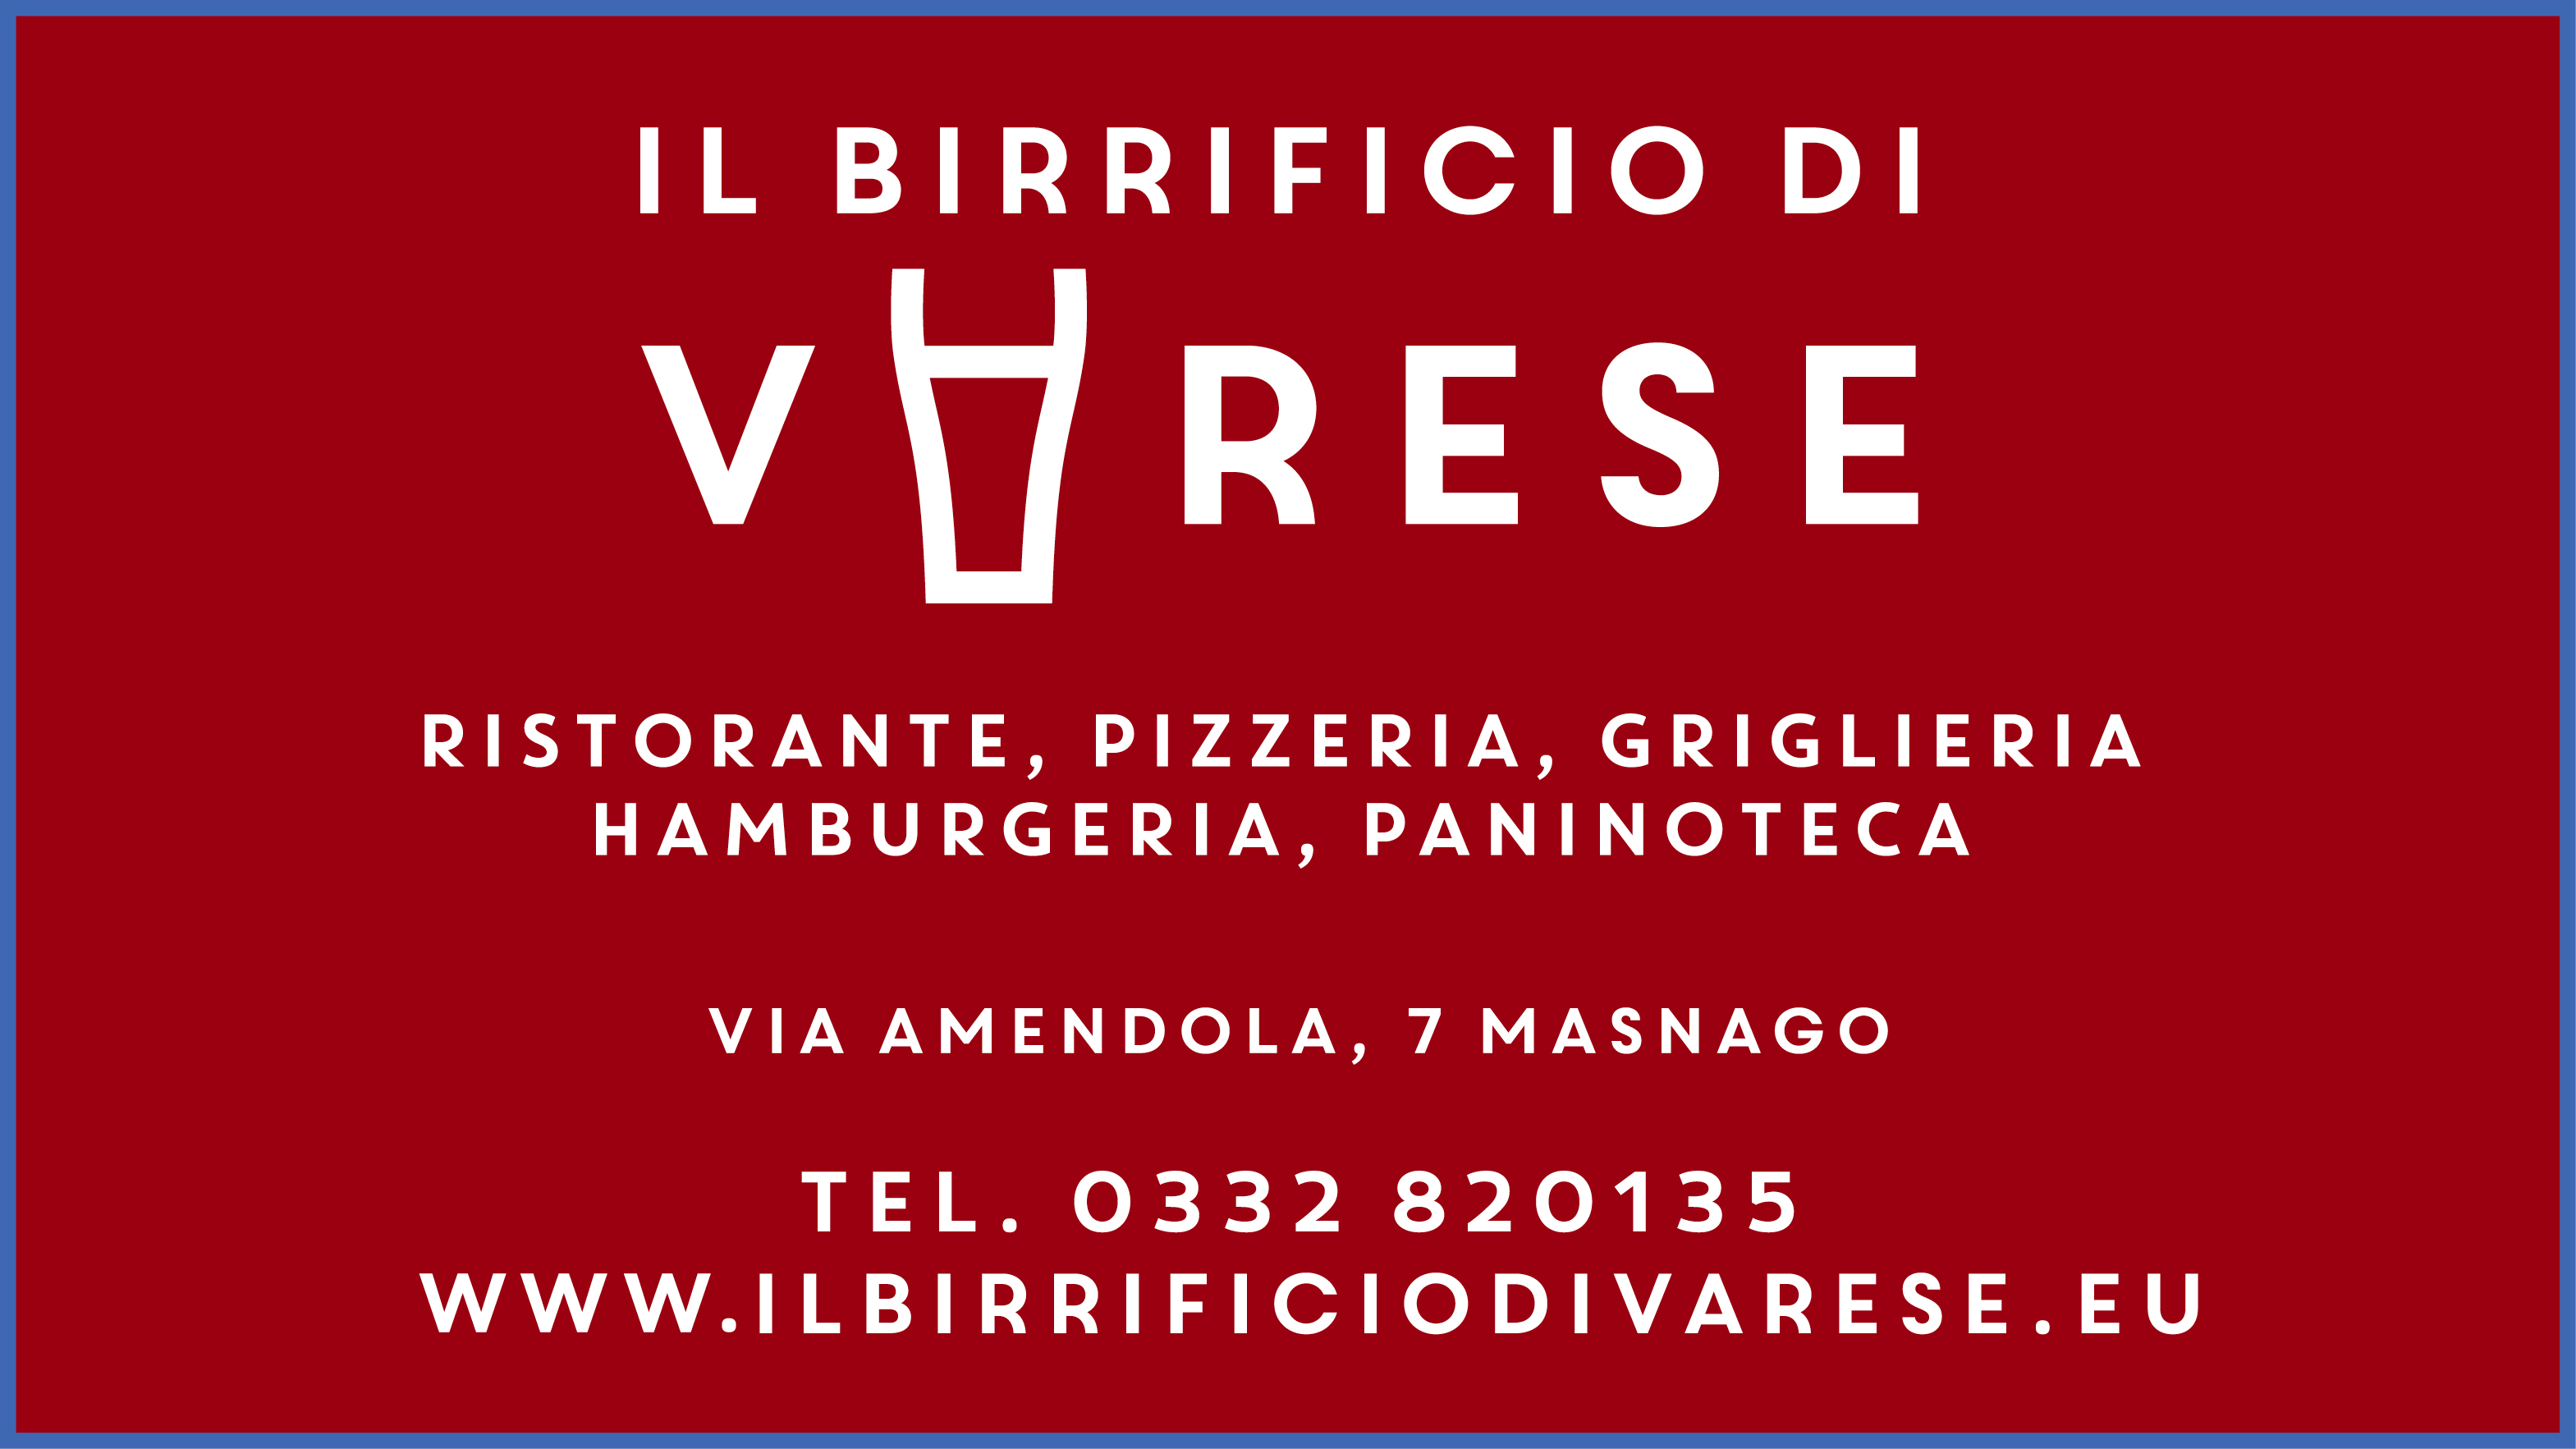 Il Birrificio di Varese